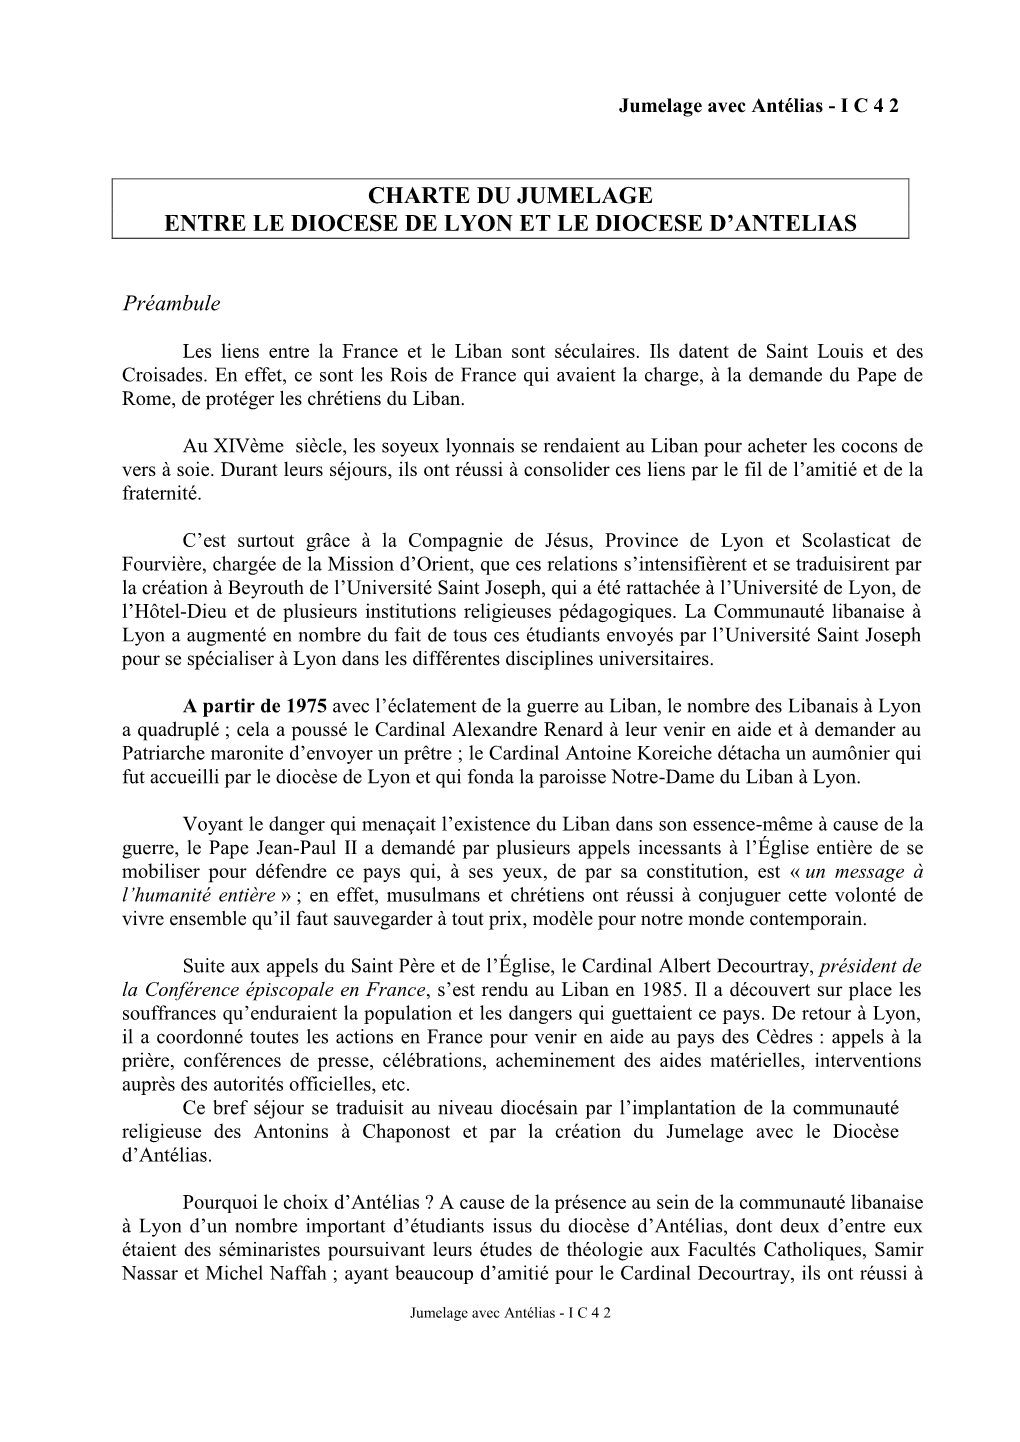 Charte Du Jumelage Entre Le Diocese De Lyon Et Le Diocese D’Antelias